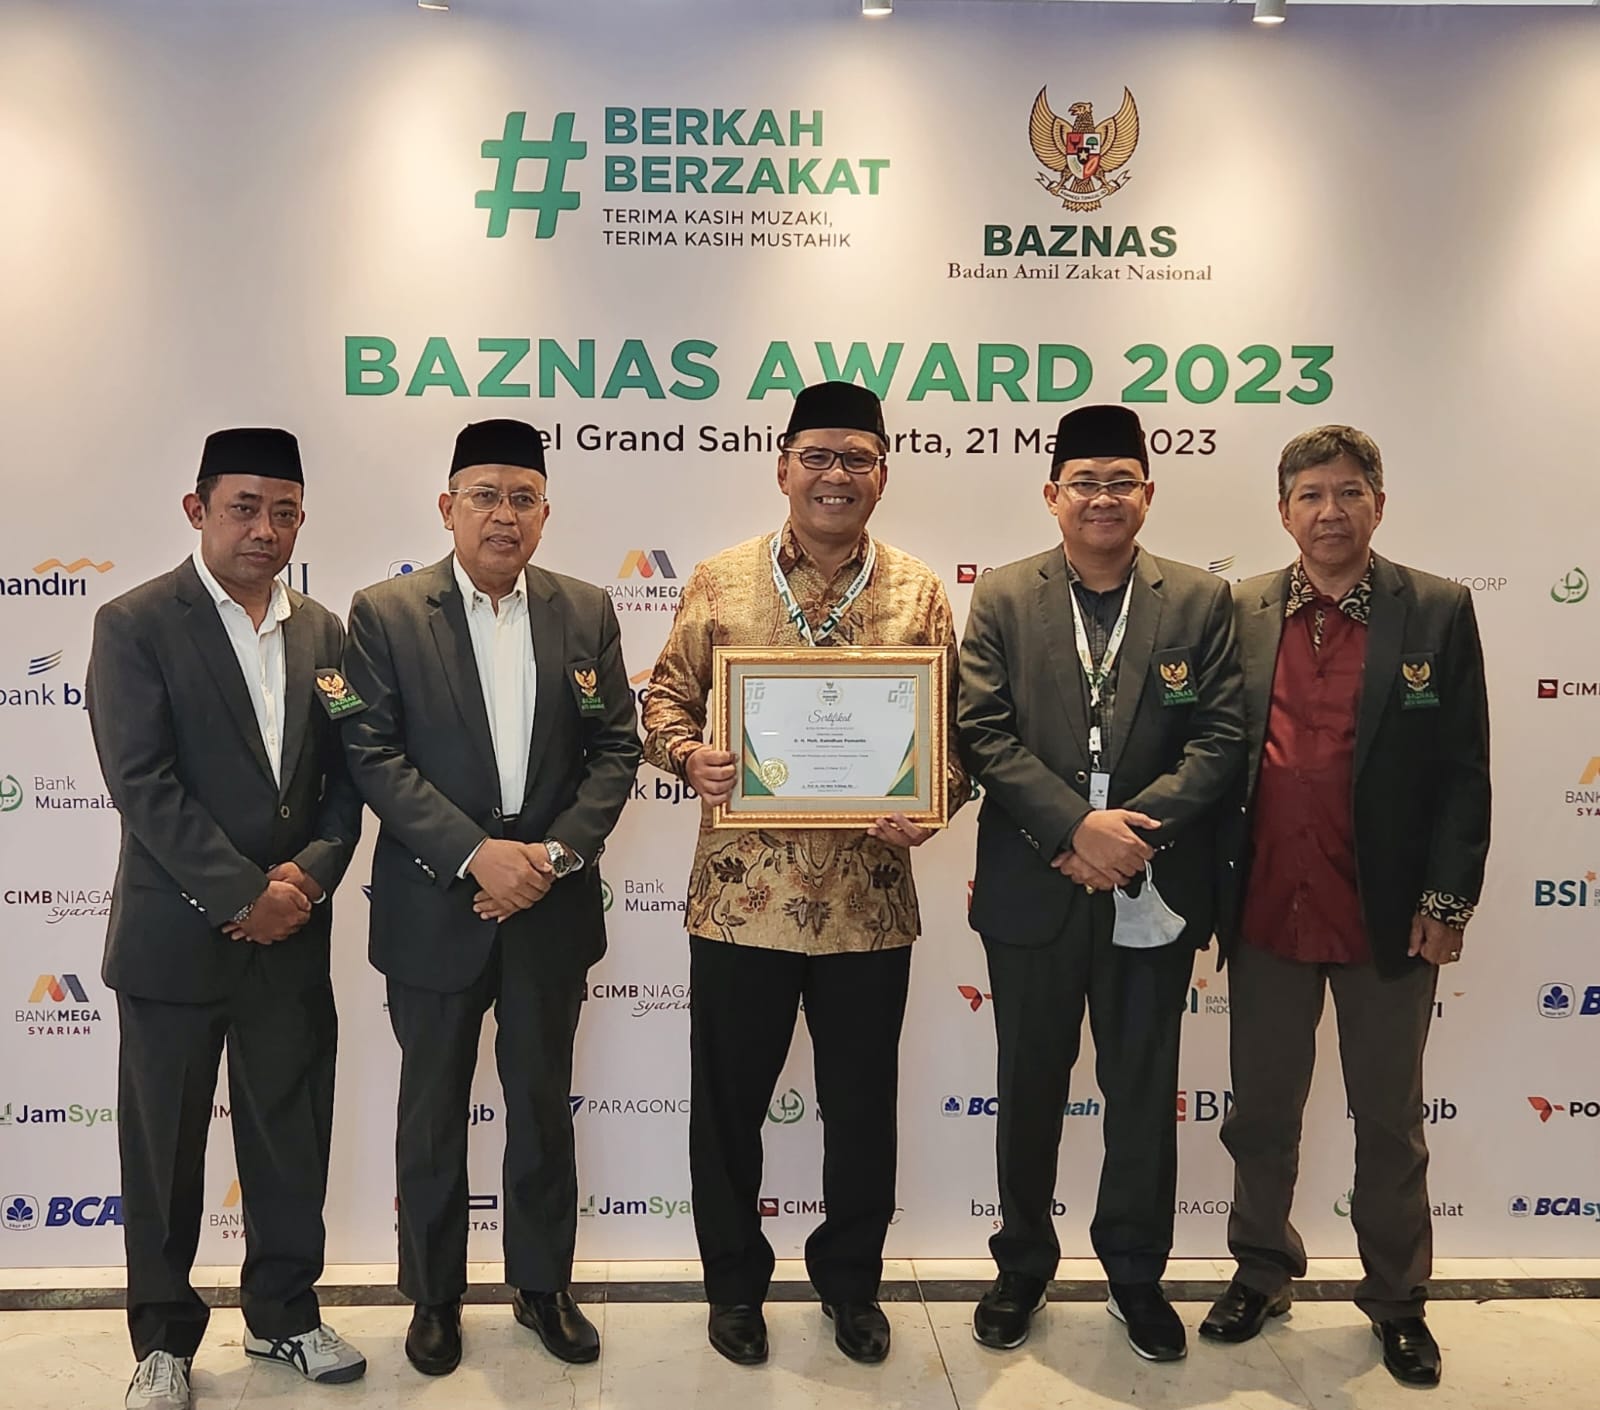 Wali Kota Makassar Moh Ramdhan Pomanto meraih Baznas Award 2023 kategori Wali Kota Pendukung Utama Program Baznas Sejahterakan Umat. Tahun lalu Moh Ramdhan Pomanto juga meraih penghargaan itu.